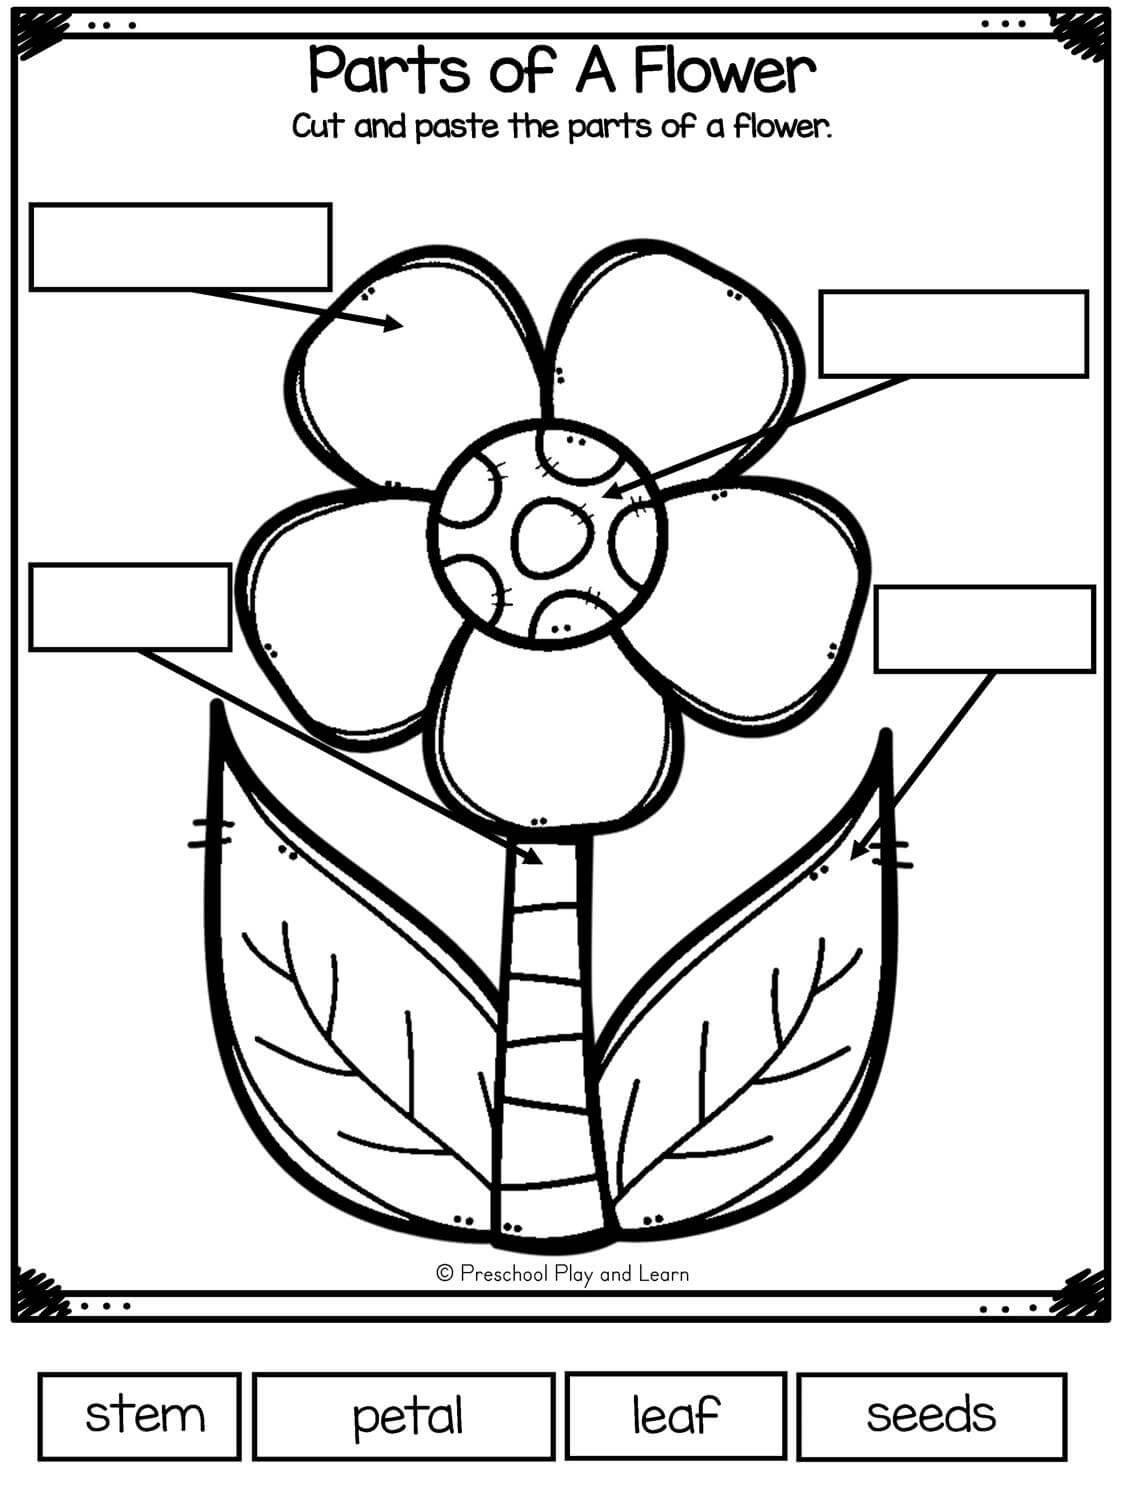 parts-of-a-flower-worksheets-for-kindergarten-printable-kindergarten